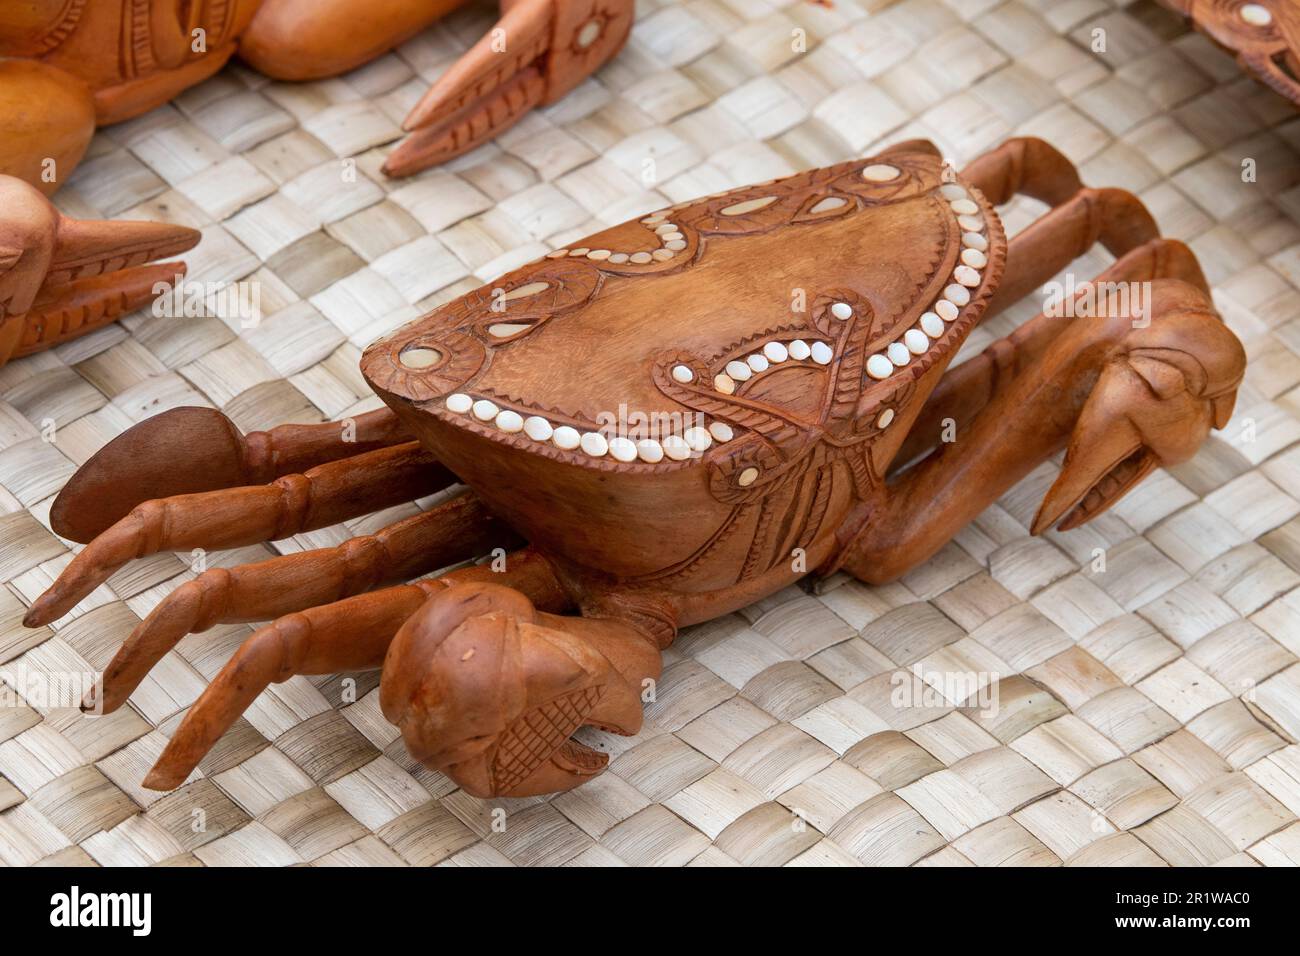 Papouasie-Nouvelle-Guinée, îles Trobriand, province de Milne Bay, île Kuiawa alias Kuyau. Crabe traditionnel en bois sculpté à la main avec incrustation en coquillages. Banque D'Images